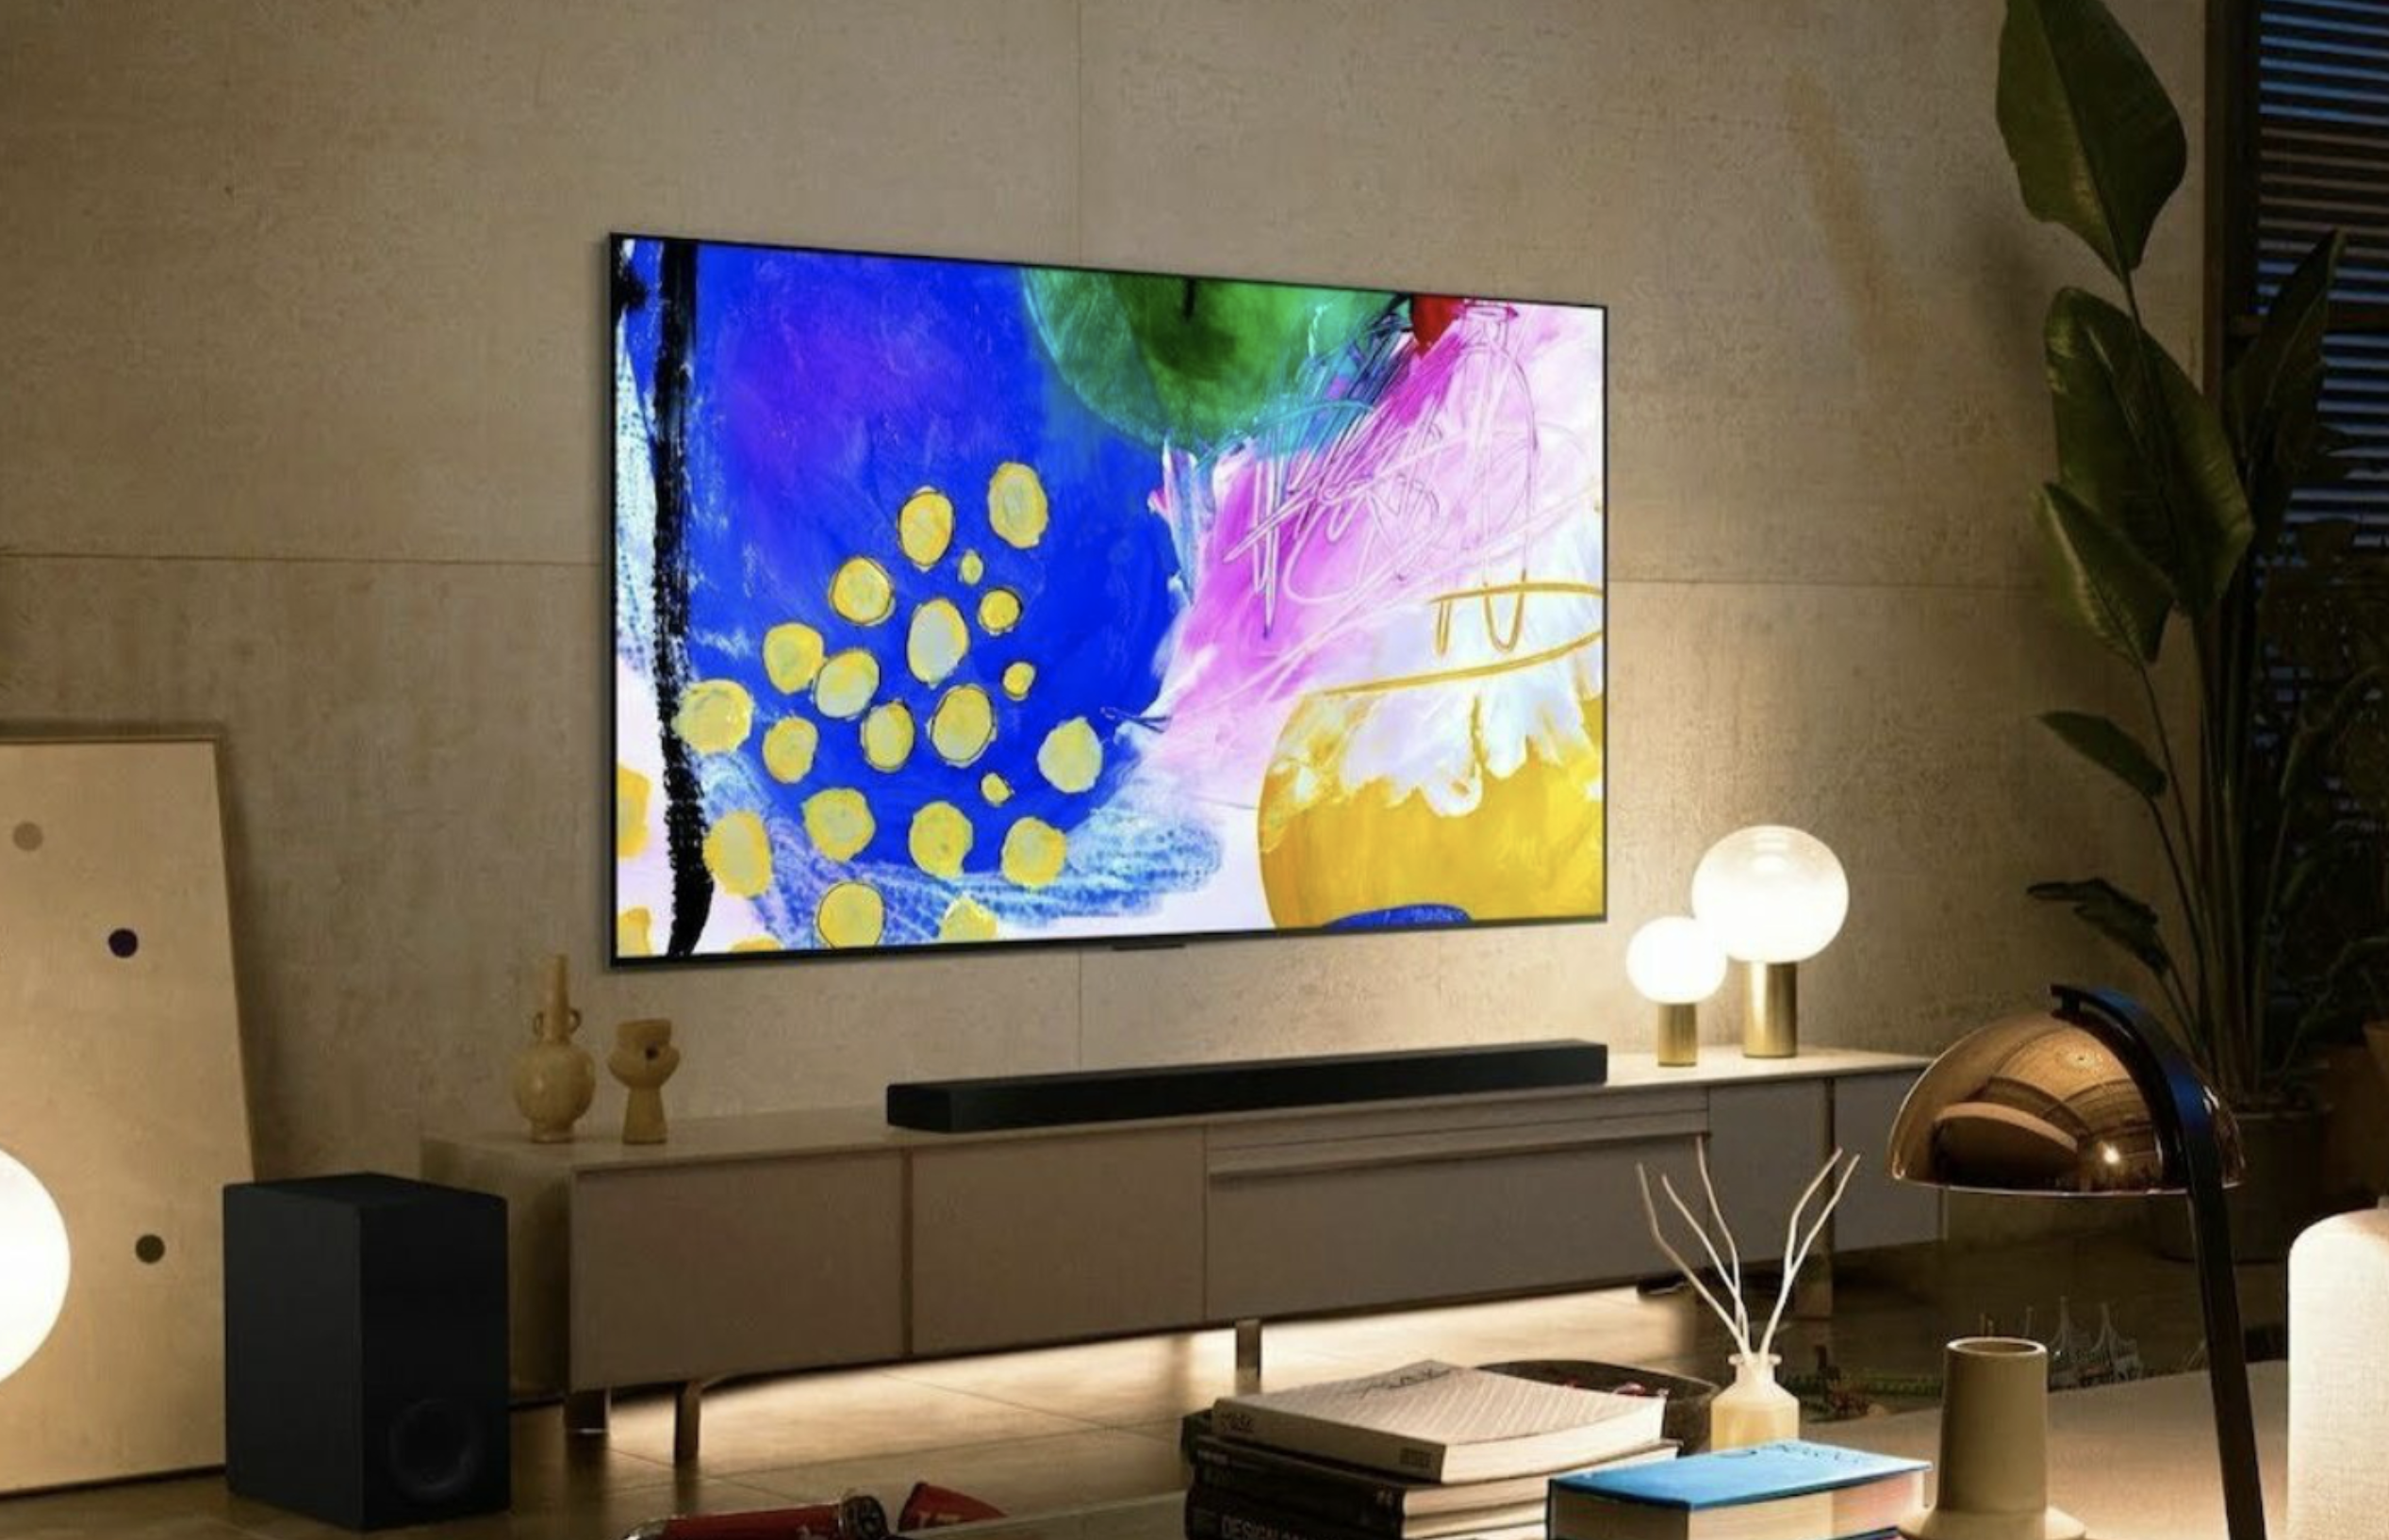 Ein LG B2 OLED 4K Smart TV, der an einer Wand über einem Entertainment-Center in einem Wohnzimmer angebracht ist.